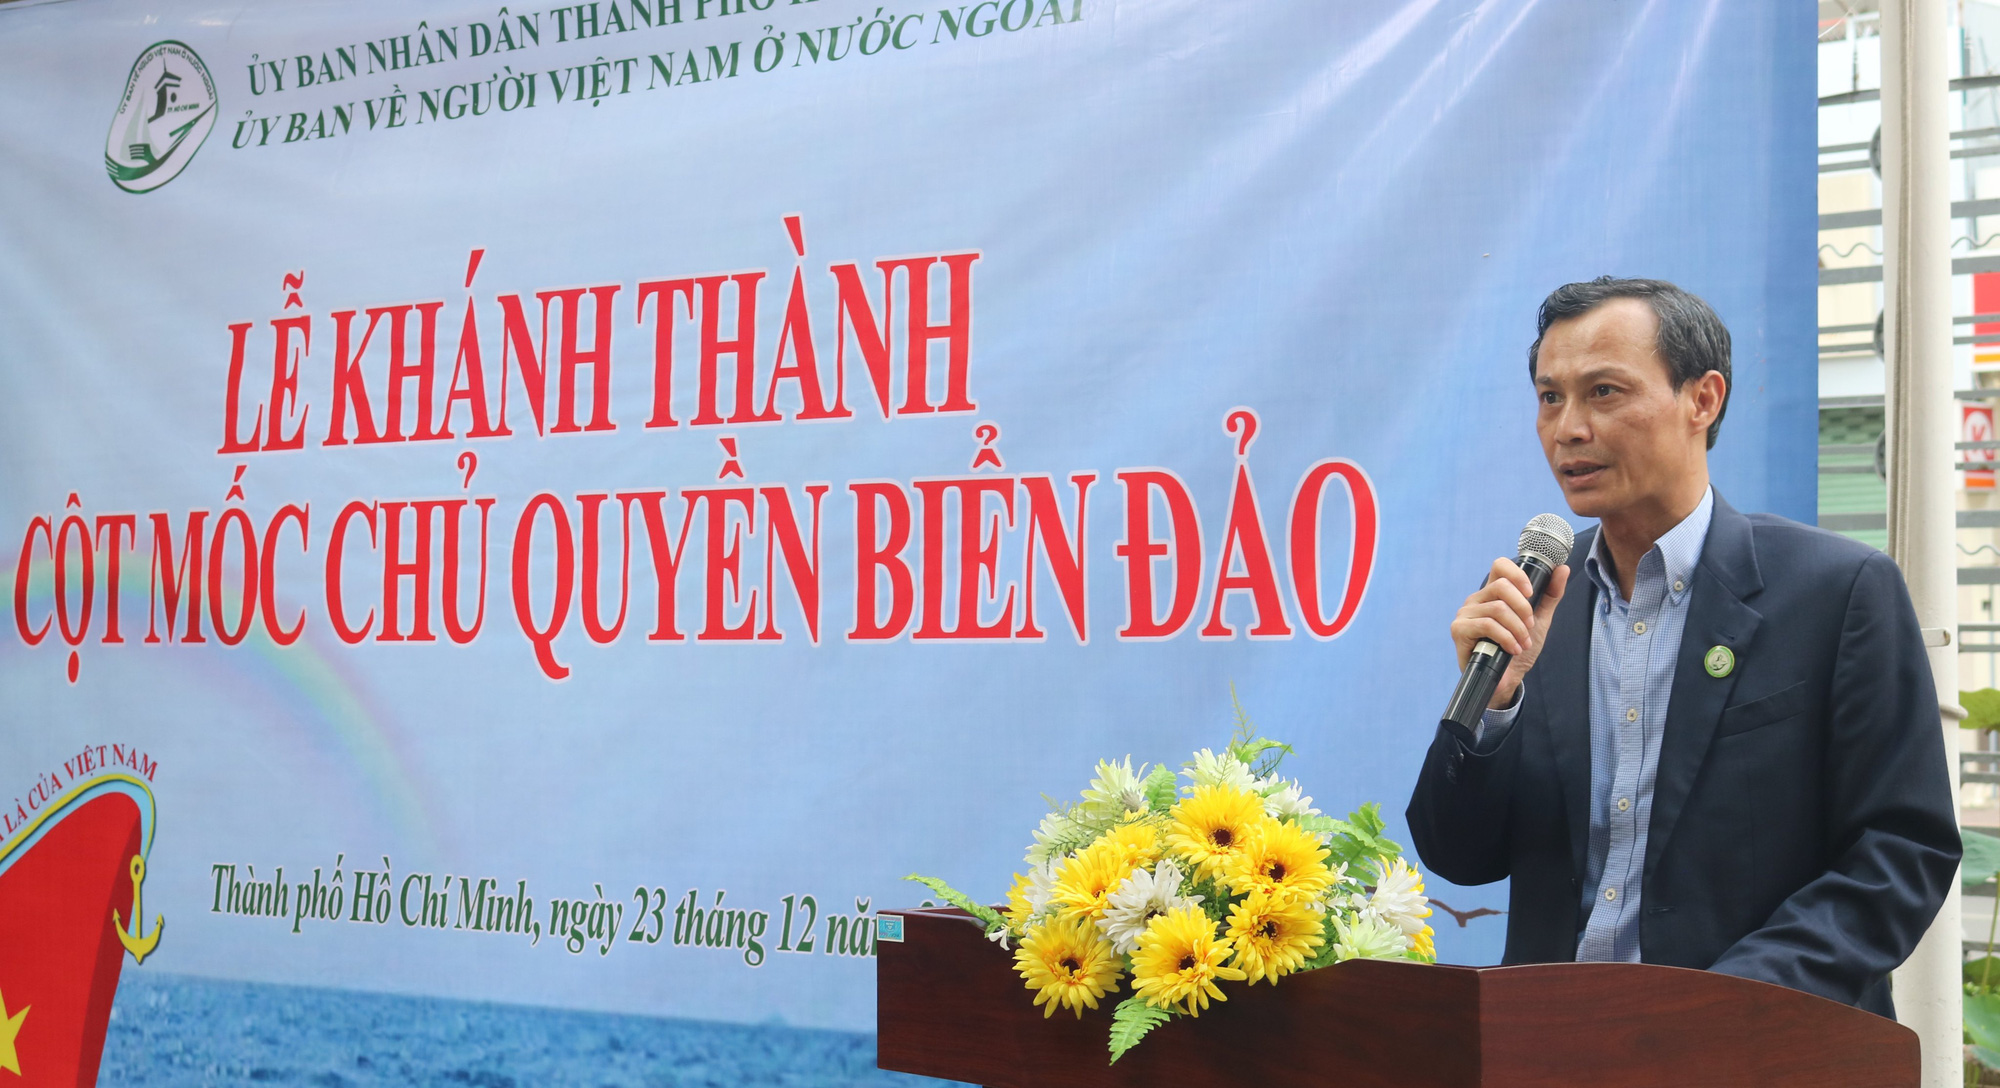 Ủy ban về Người Việt Nam ở nước ngoài TP HCM khánh thành Mô hình Cột mốc  chủ quyền biển đảo Trường Sa